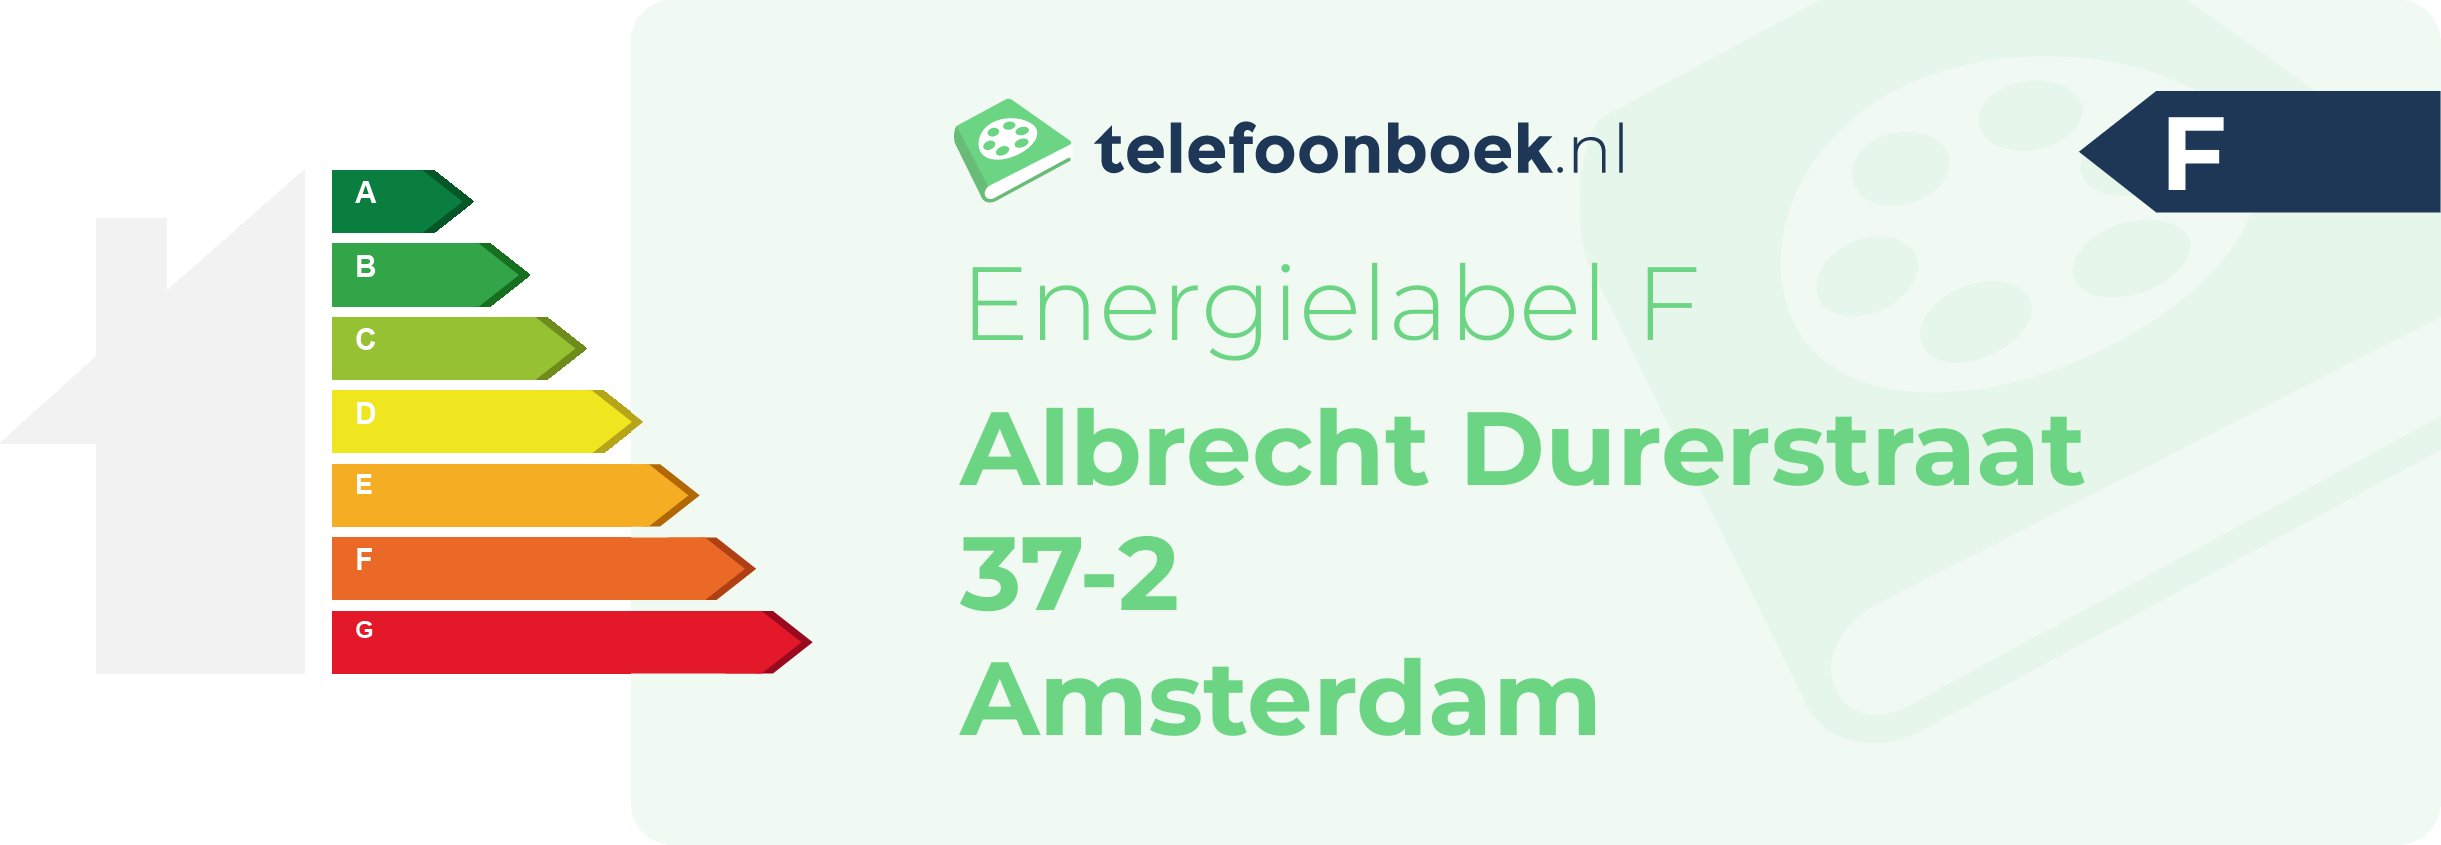 Energielabel Albrecht Durerstraat 37-2 Amsterdam